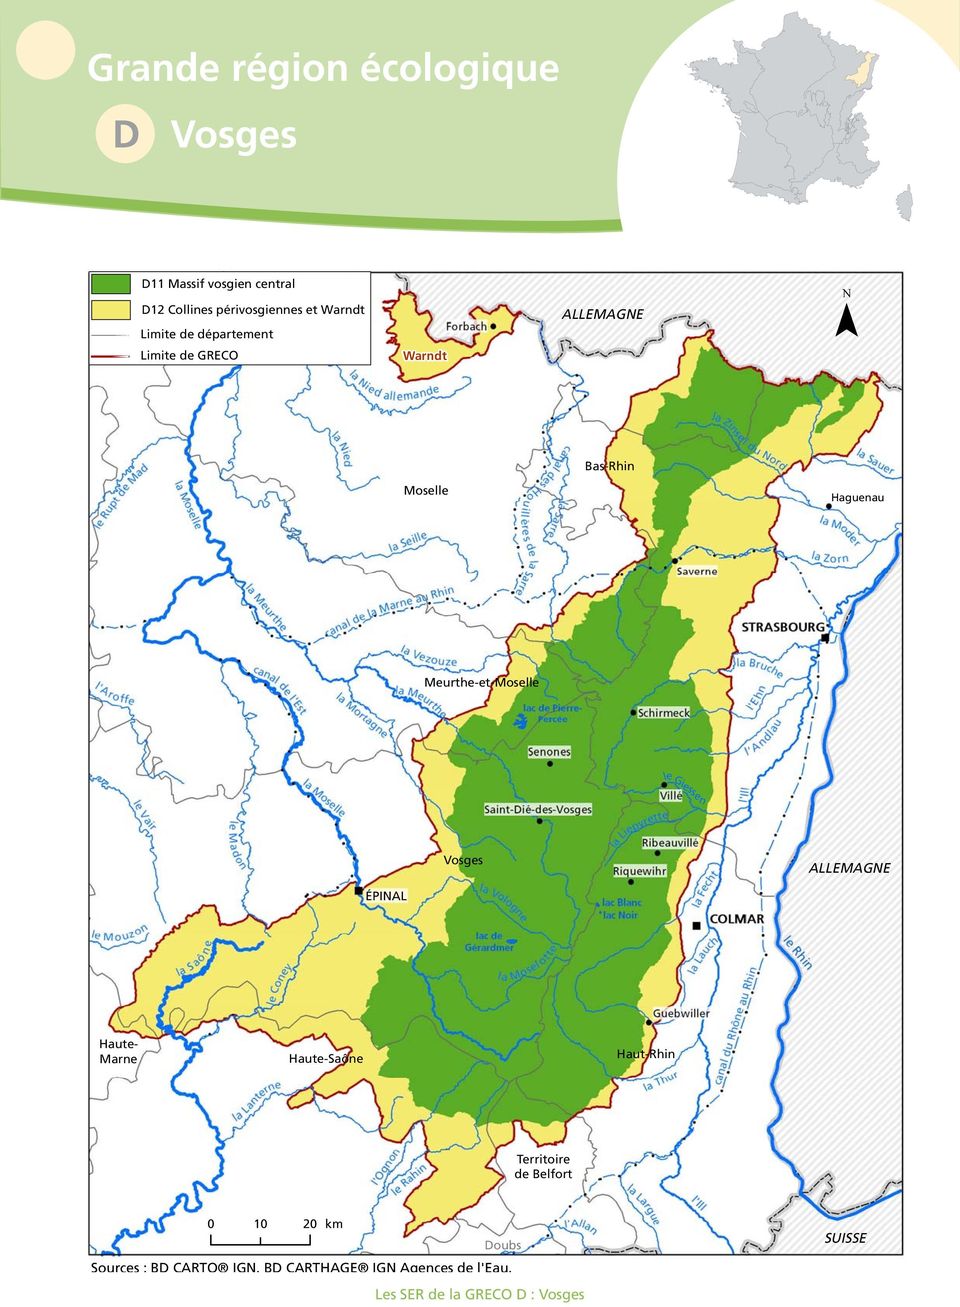 Meurthe-et-Moselle le Giessen Vosges ÉPINAL Haute- Marne Haute-aône Haut-hin Territoire de